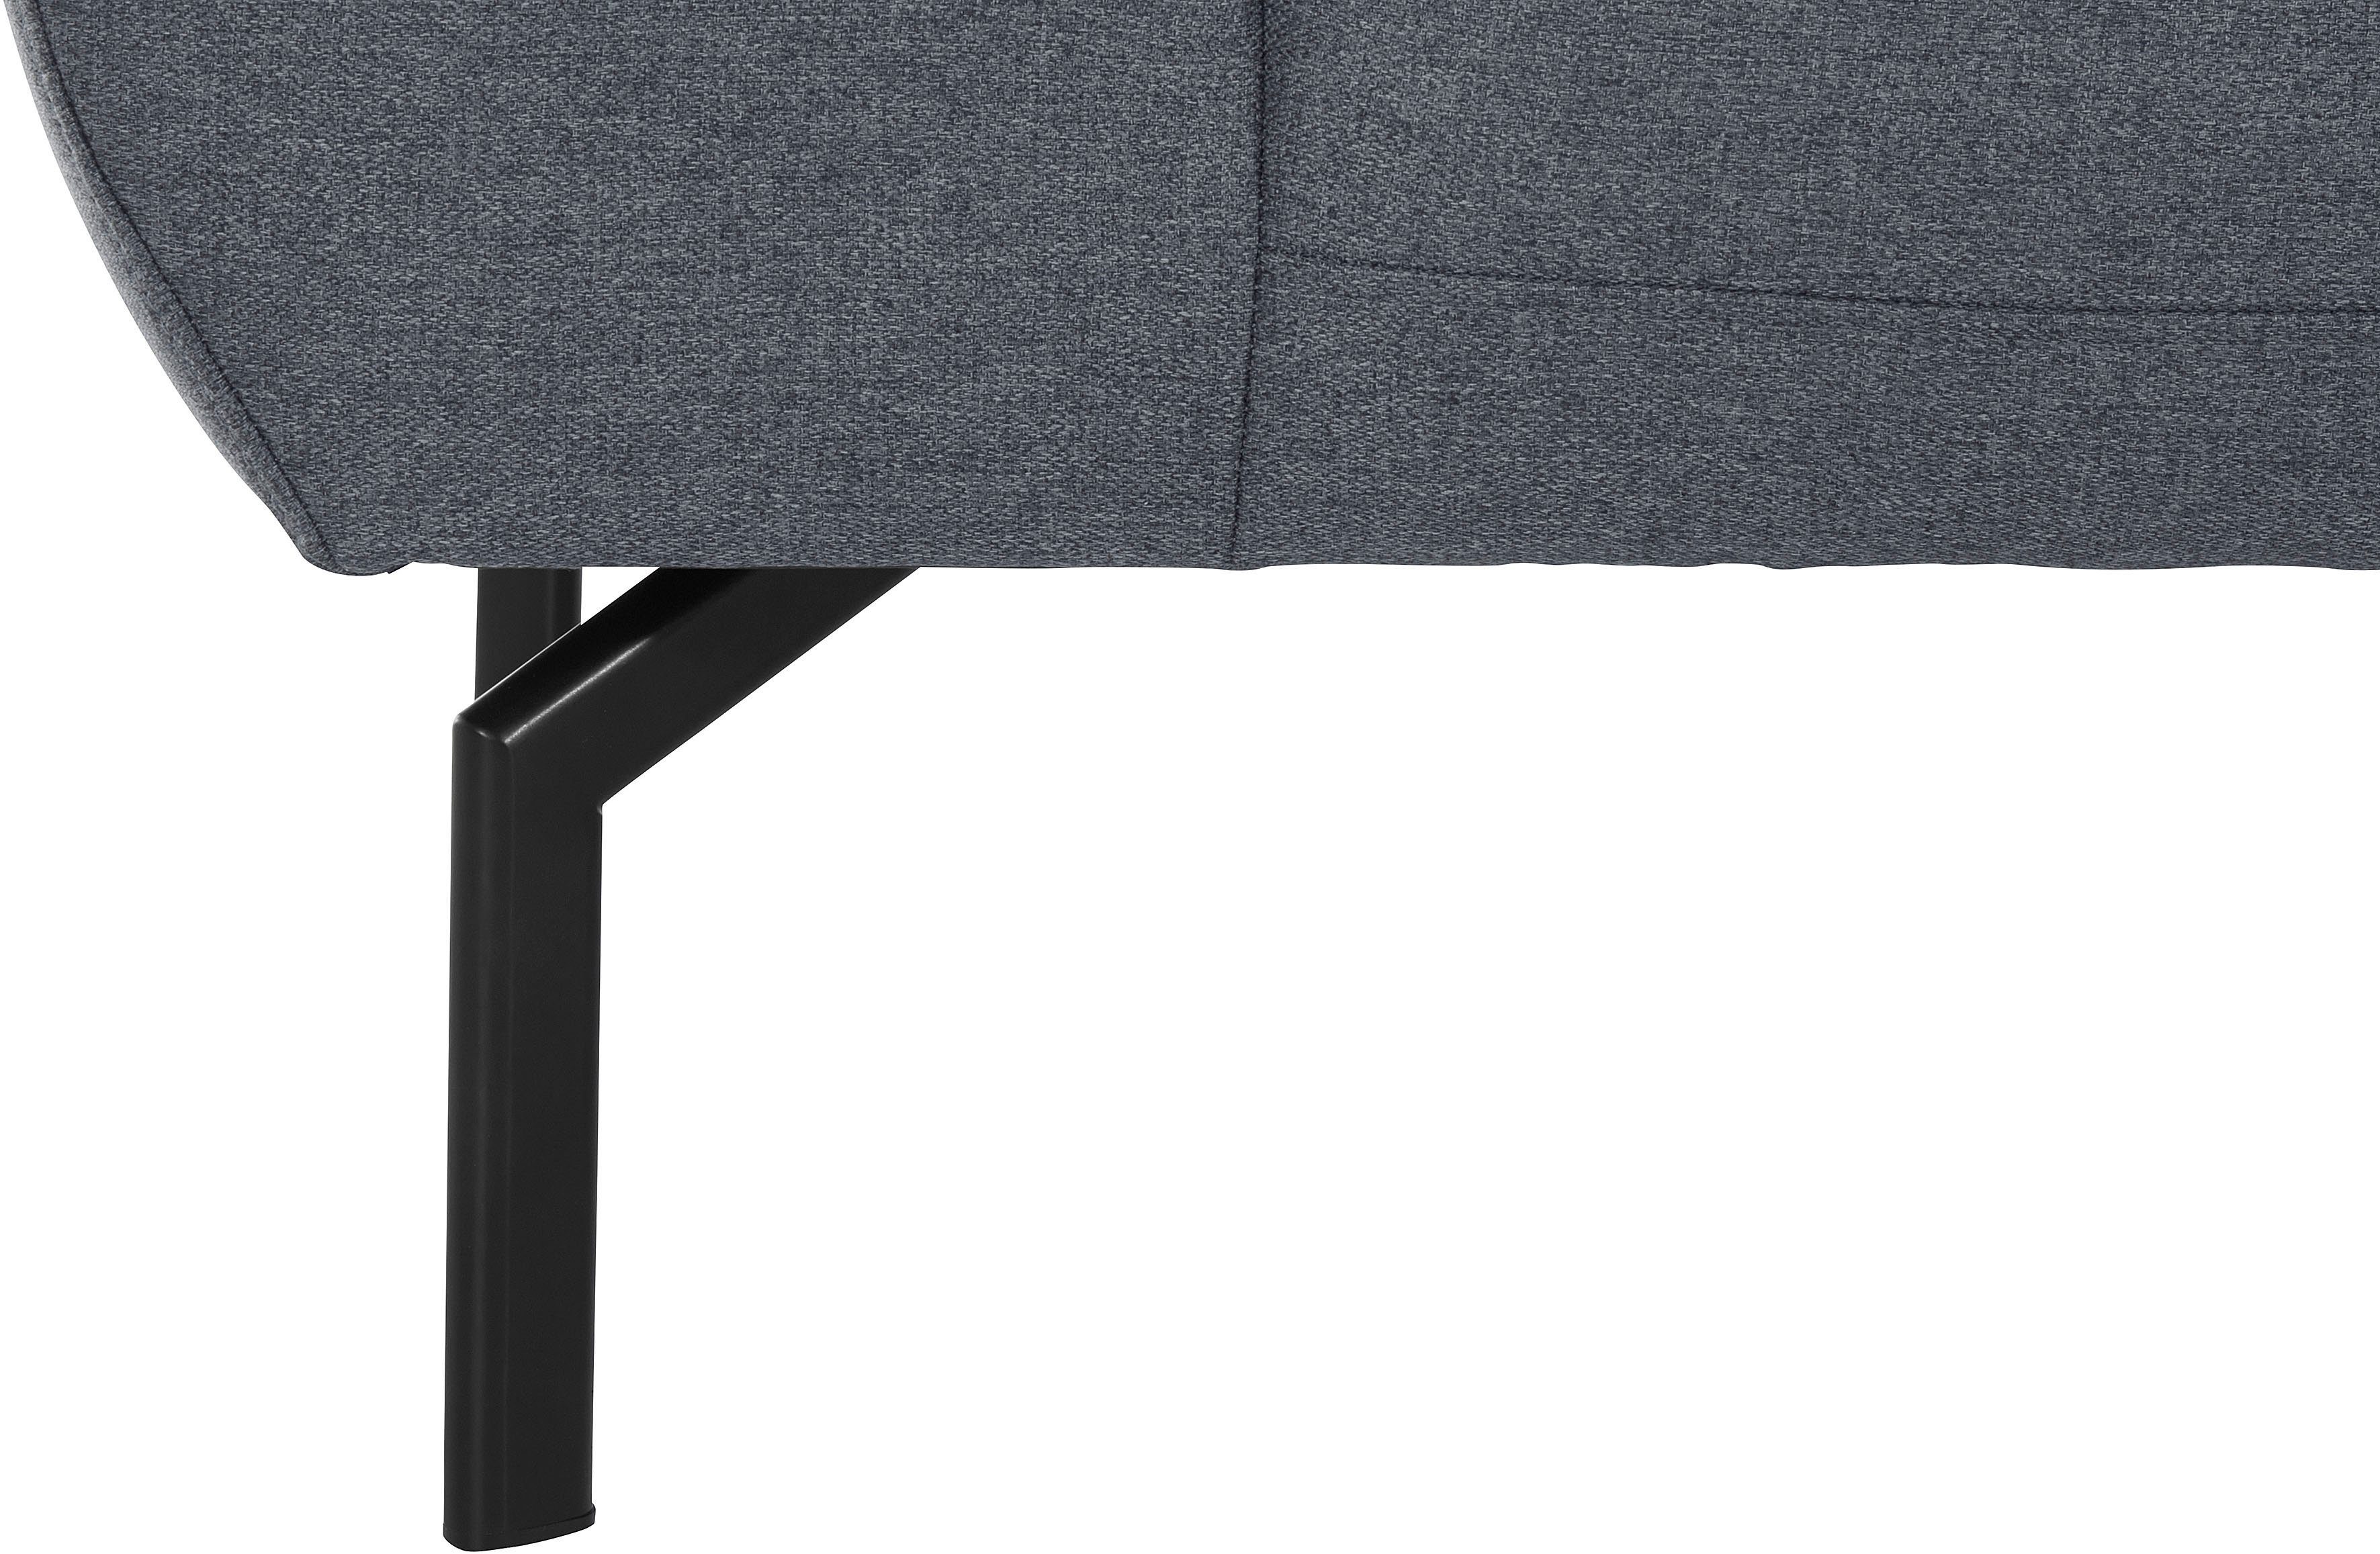 2,5-Sitzer of wahlweise mit Places Lederoptik Rückenverstellung, Luxus-Microfaser Trapino Luxus, in Style